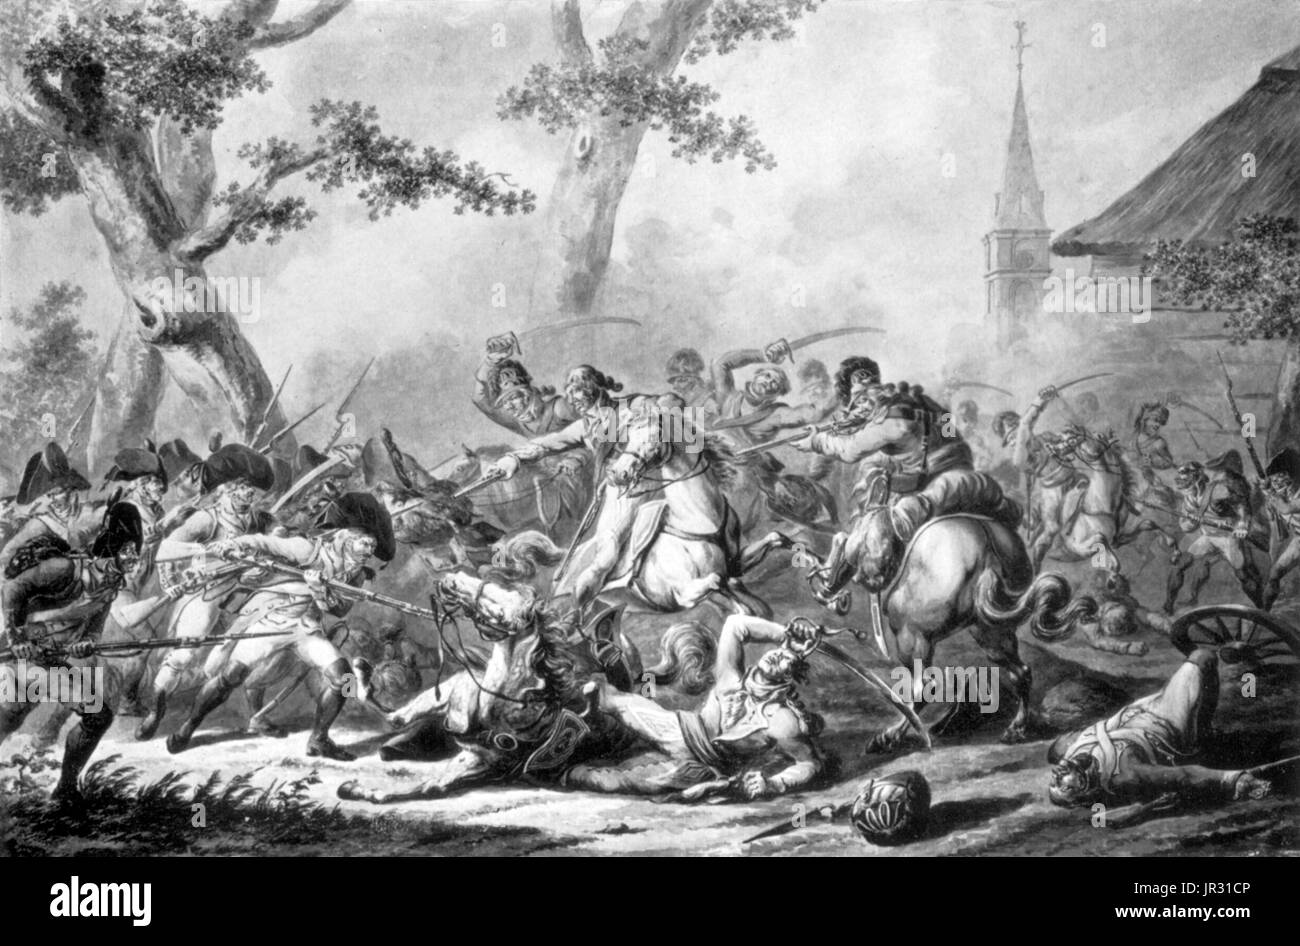 Während der napoleonischen Kriege Dragoner in der Regel eine Kavallerie Rolle übernommen, obwohl eine leichtere Klasse von berittenen Truppen als die gepanzerten Kürassiere bleiben. Dragoner Ritt größere Pferde als leichte Kavallerie und direkt, anstatt gebogene Schwerter geschwungen. Kaiser Napoleon oft komplette Divisionen aus seine 30 Dragoner-Regimenter gebildet und benutzten sie als Schlacht Kavallerie, um wichtigsten Widerstand des Feindes zu brechen. Im Jahre 1809 erzielte französische Dragoner beachtliche Erfolge gegen die spanischen Armeen in die Schlacht Ocana und die Schlacht von Alba de Tormes. Britische schwere Dragoner machte vernichtende Anklage gegen französische infa Stockfoto